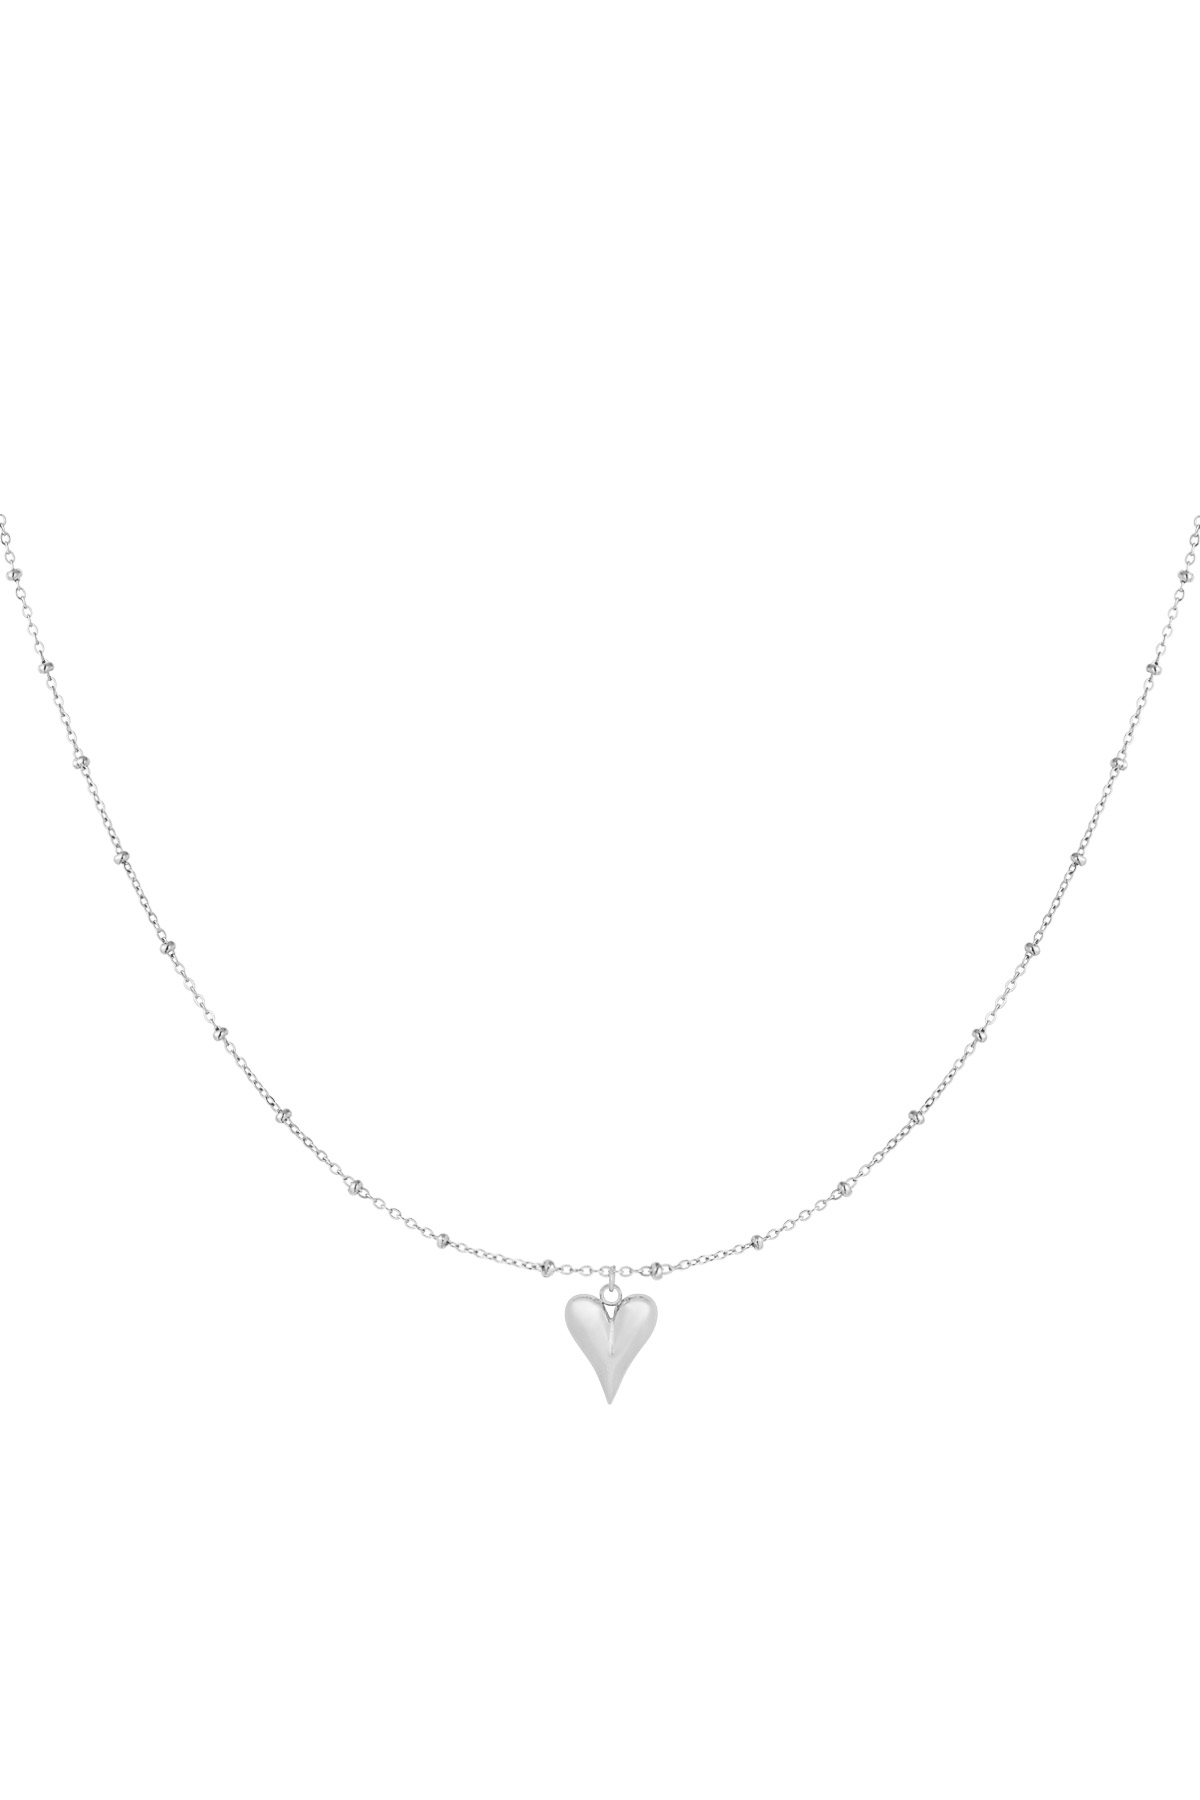 Necklace timeless devotion - silver h5 